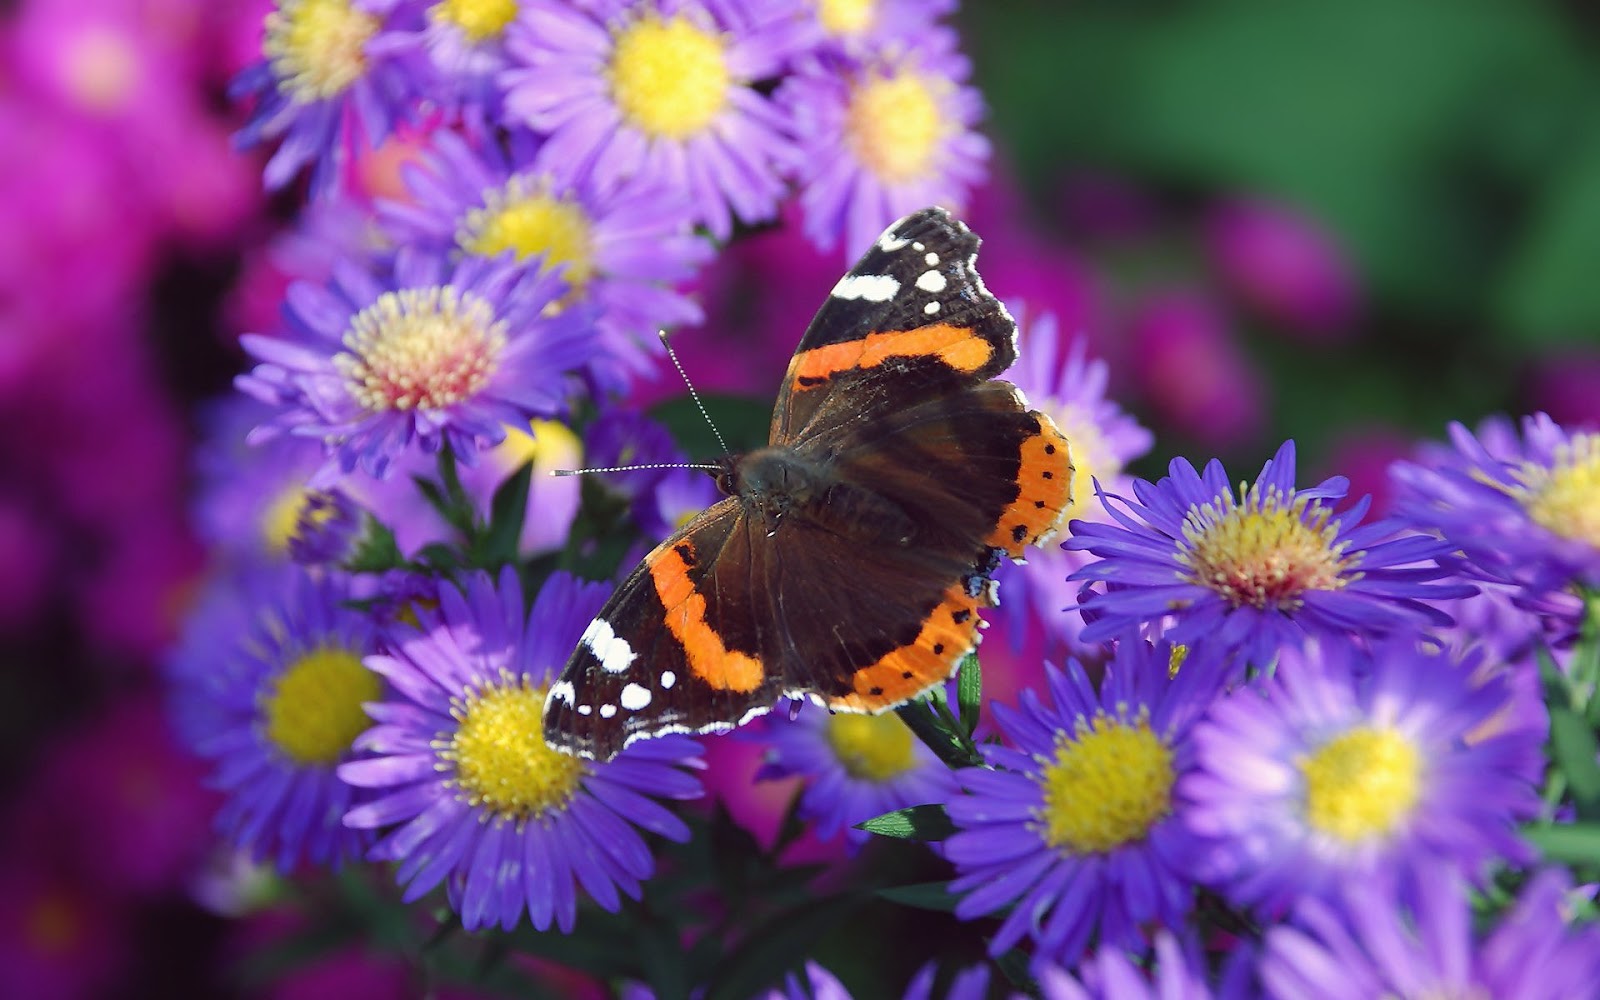 http://1.bp.blogspot.com/-7RgJ9U94p80/UDZHFMr0VdI/AAAAAAAAA5s/UXcj1eGyrUA/s1600/hd-vlinder-wallpaper-met-een-bruin-oranje-vlinder-op-een-paarse-bloem-achtergrond-foto.jpg